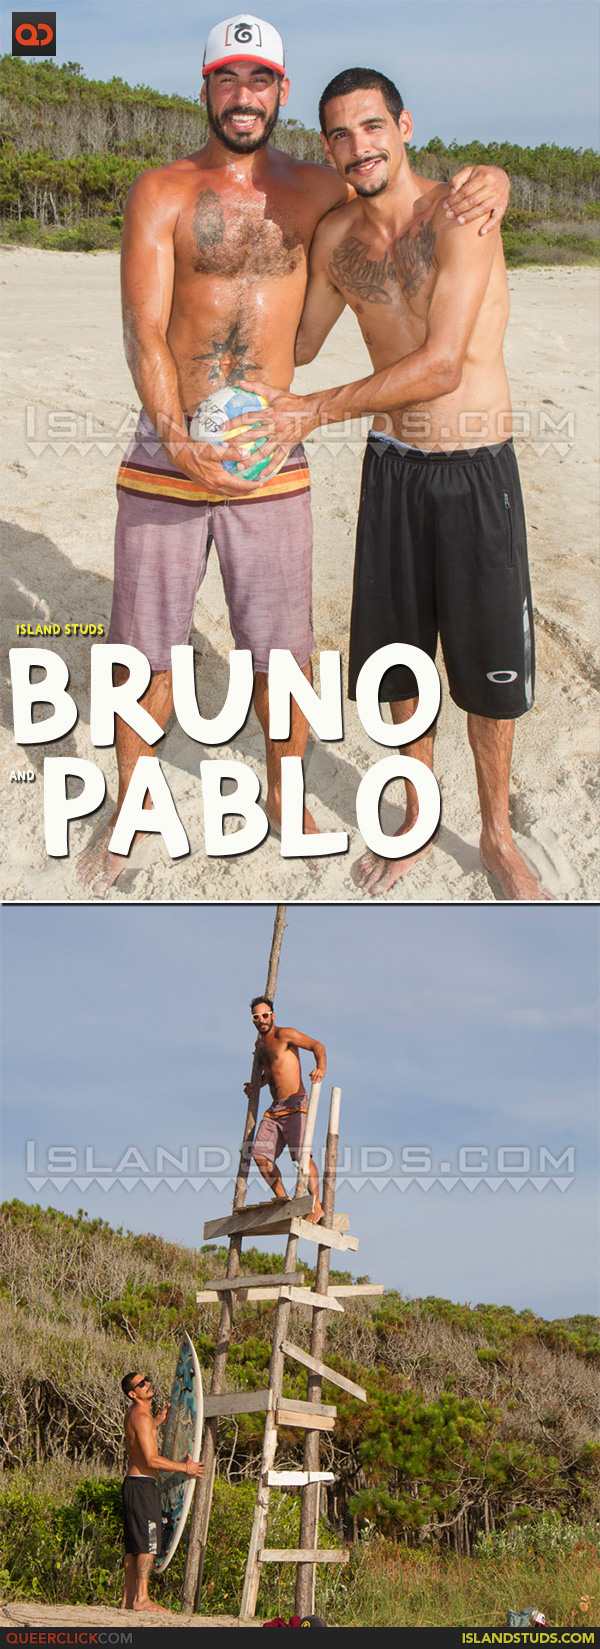 Island Studs: Bruno and Pablo